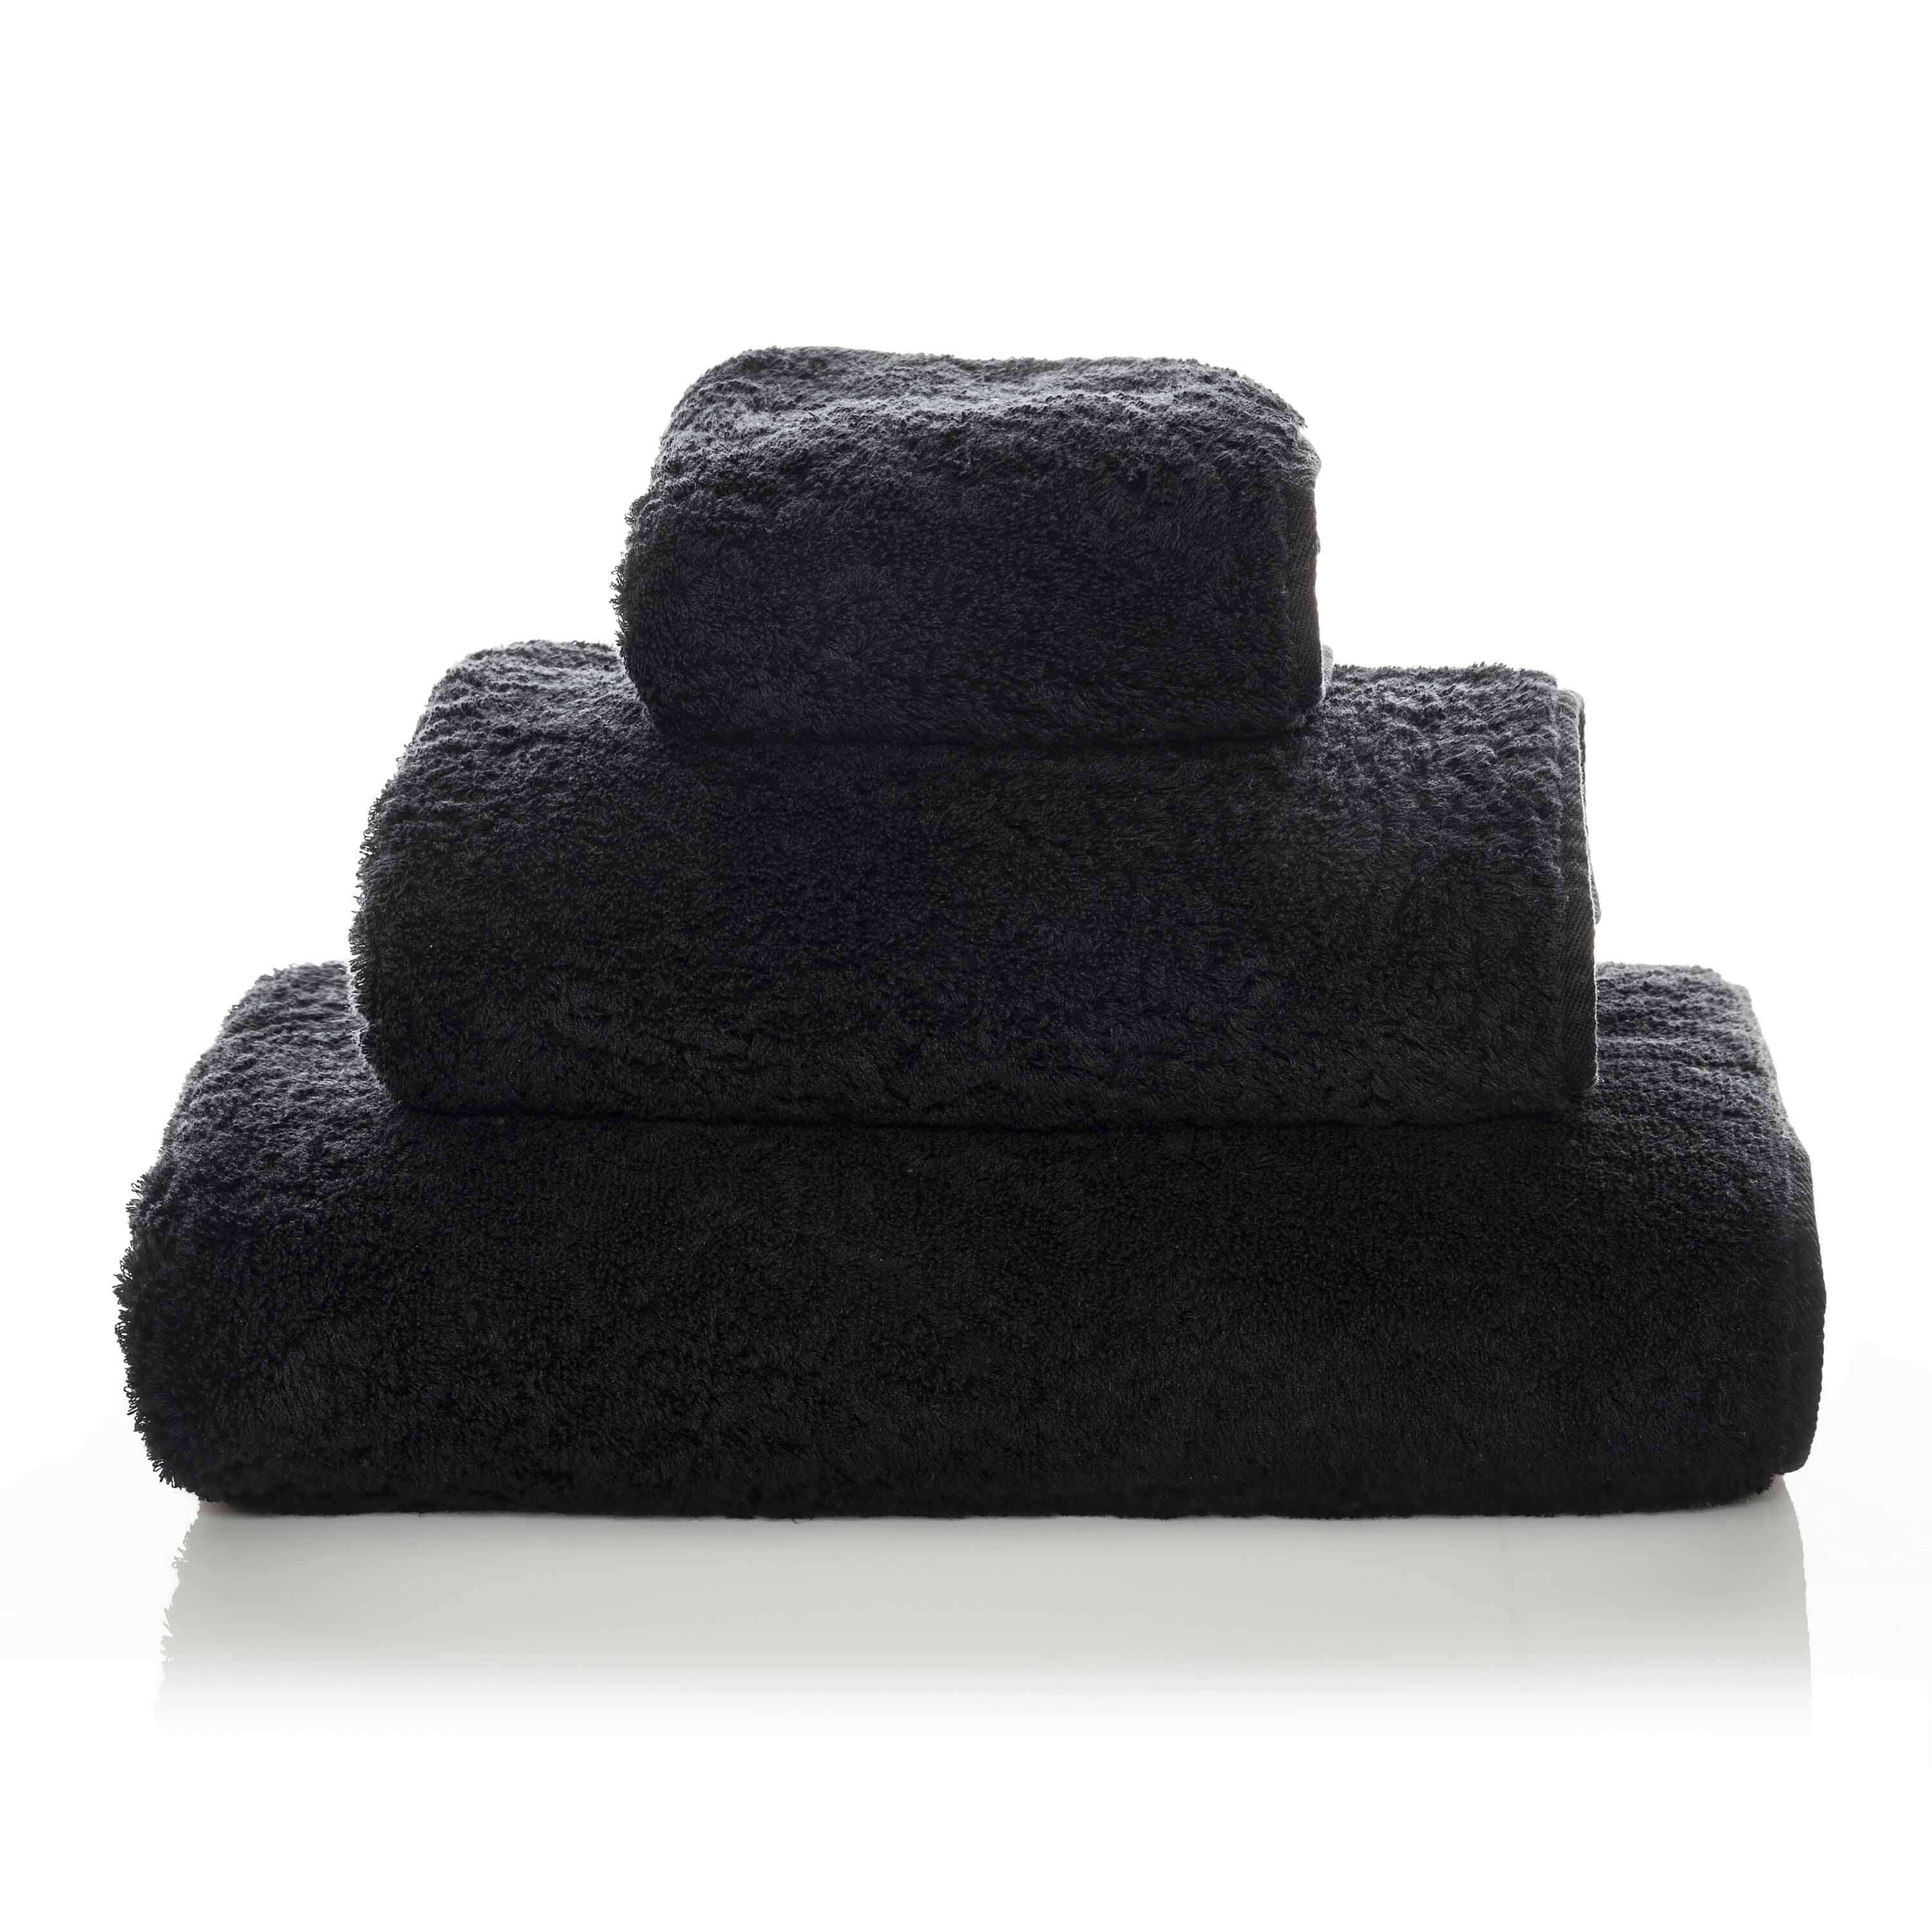 Элитное полотенце Egoist Range Black ☞ Размер: 17 x 22 см (уголок для купания)